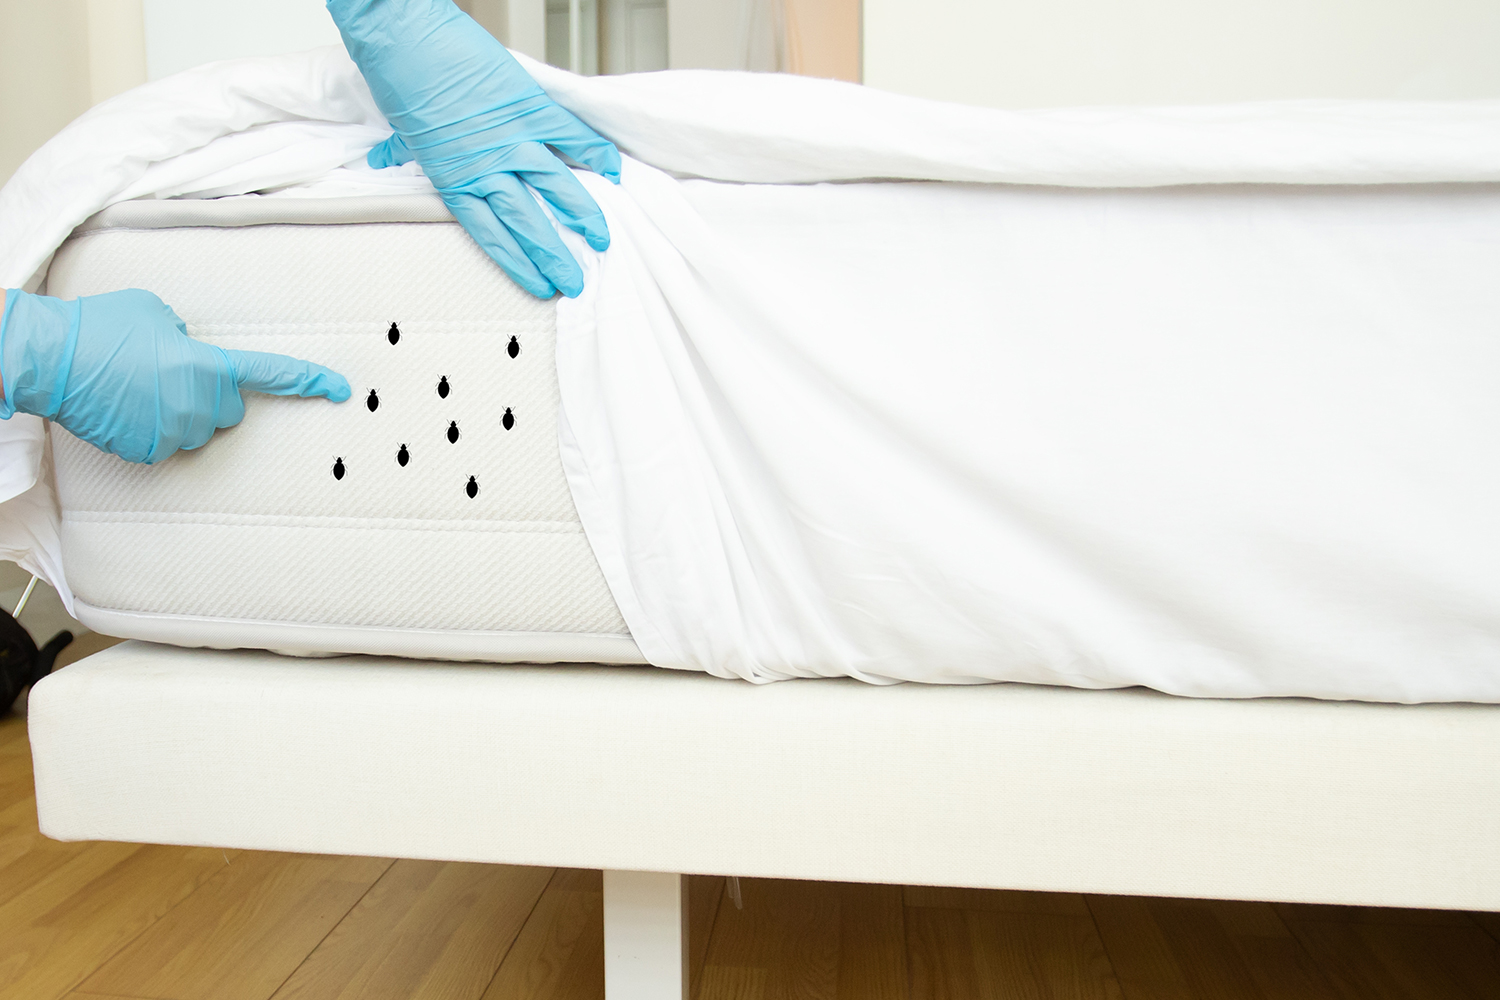 Punaises de lit : utiliser les produits chimiques en dernier recours   Anses - Agence nationale de sécurité sanitaire de l'alimentation, de  l'environnement et du travail